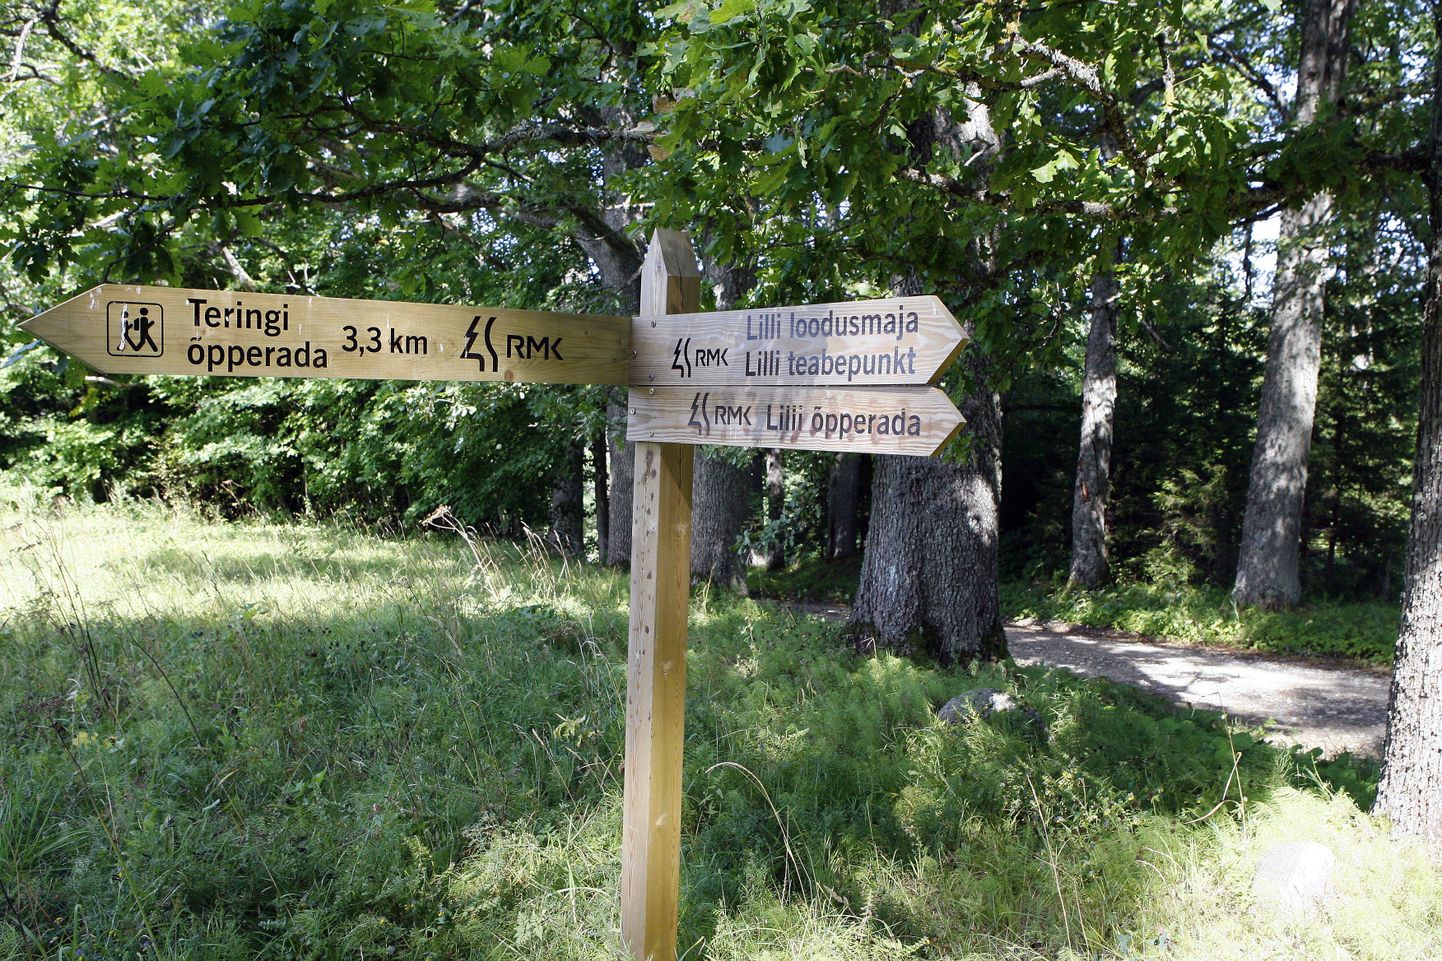 Eesti ja Läti orienteerumisliidu ühine võistlussari jätkub eeloleval nädalavahetusel kahepäevase mõõduvõtuga Viljandimaal Lillis.